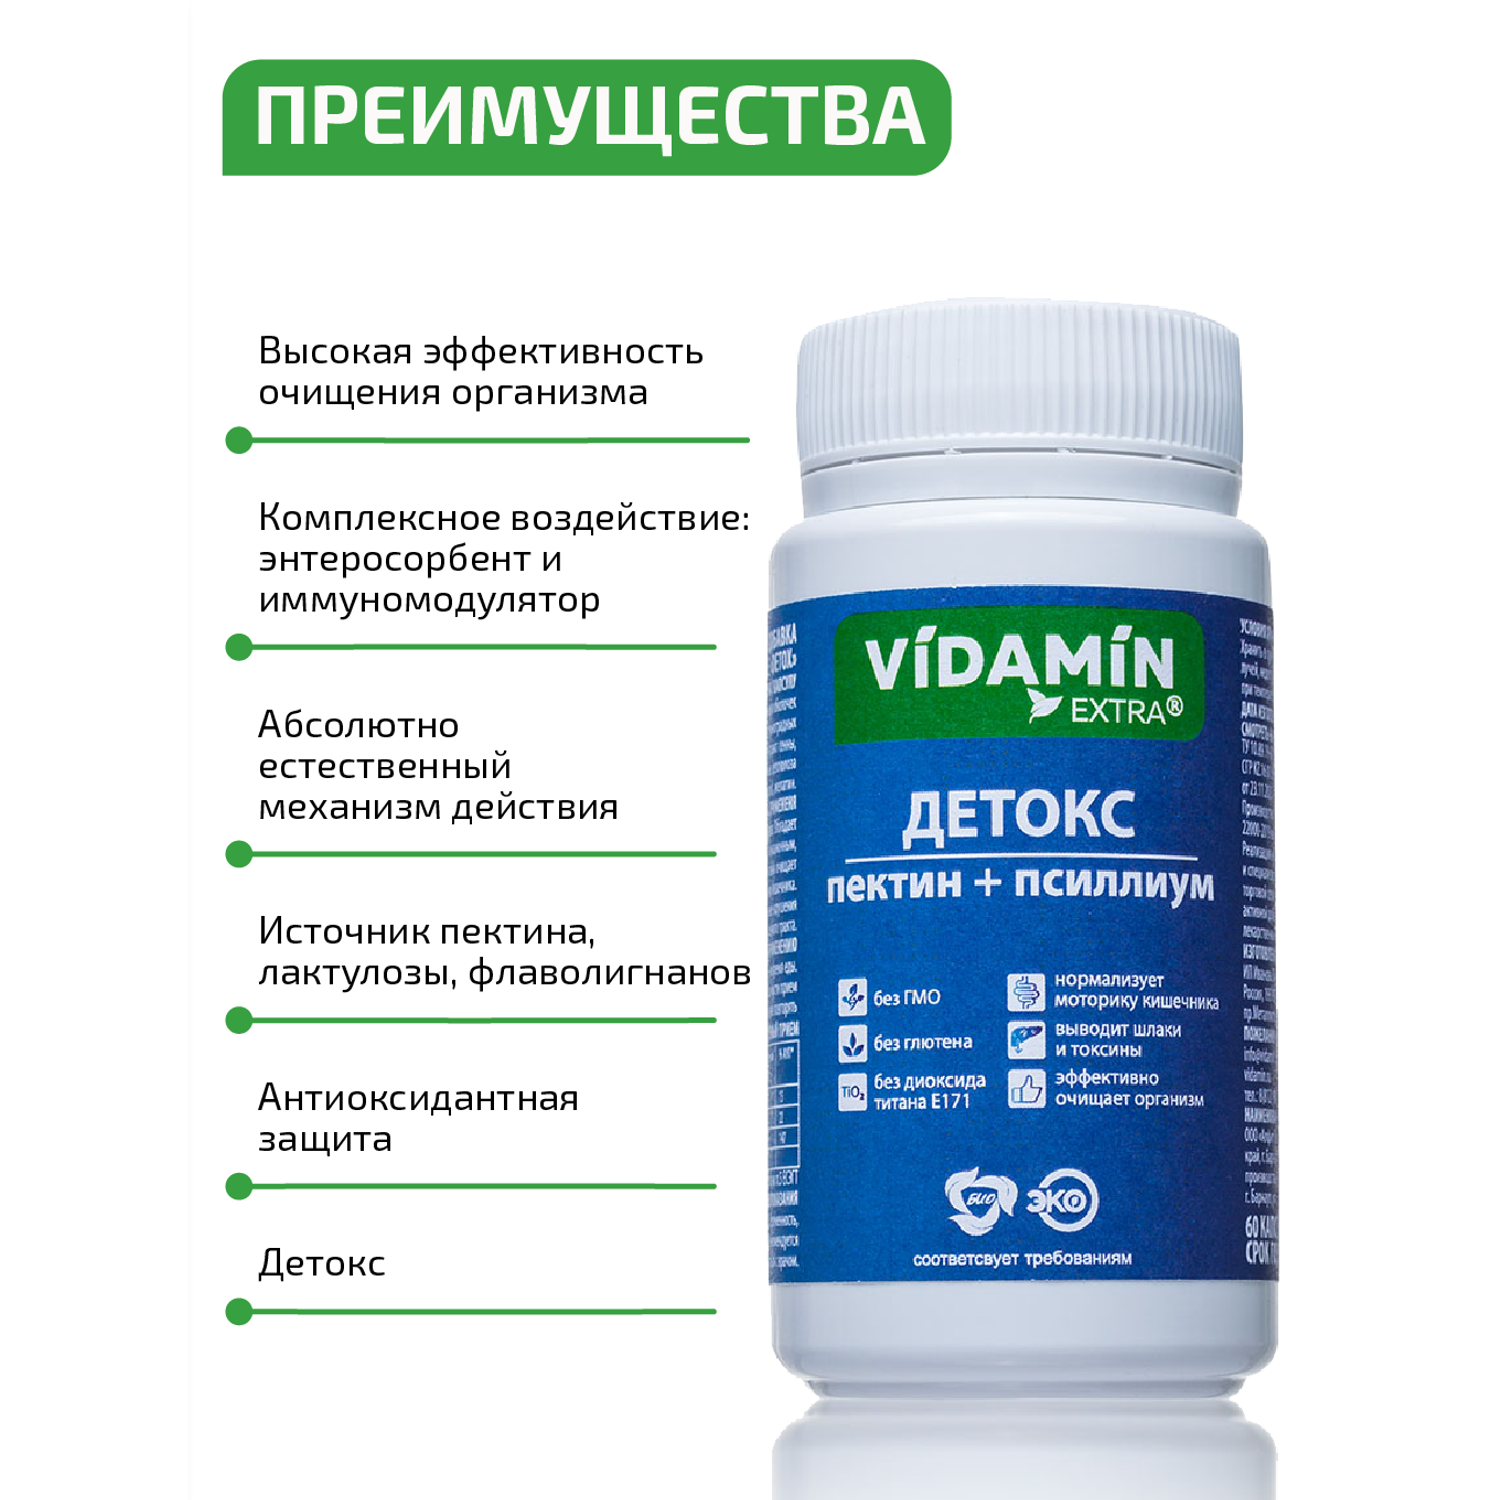 Псиллиум пектин детокс VIDAMIN EXTRA 60 прозрачных капсул - фото 4